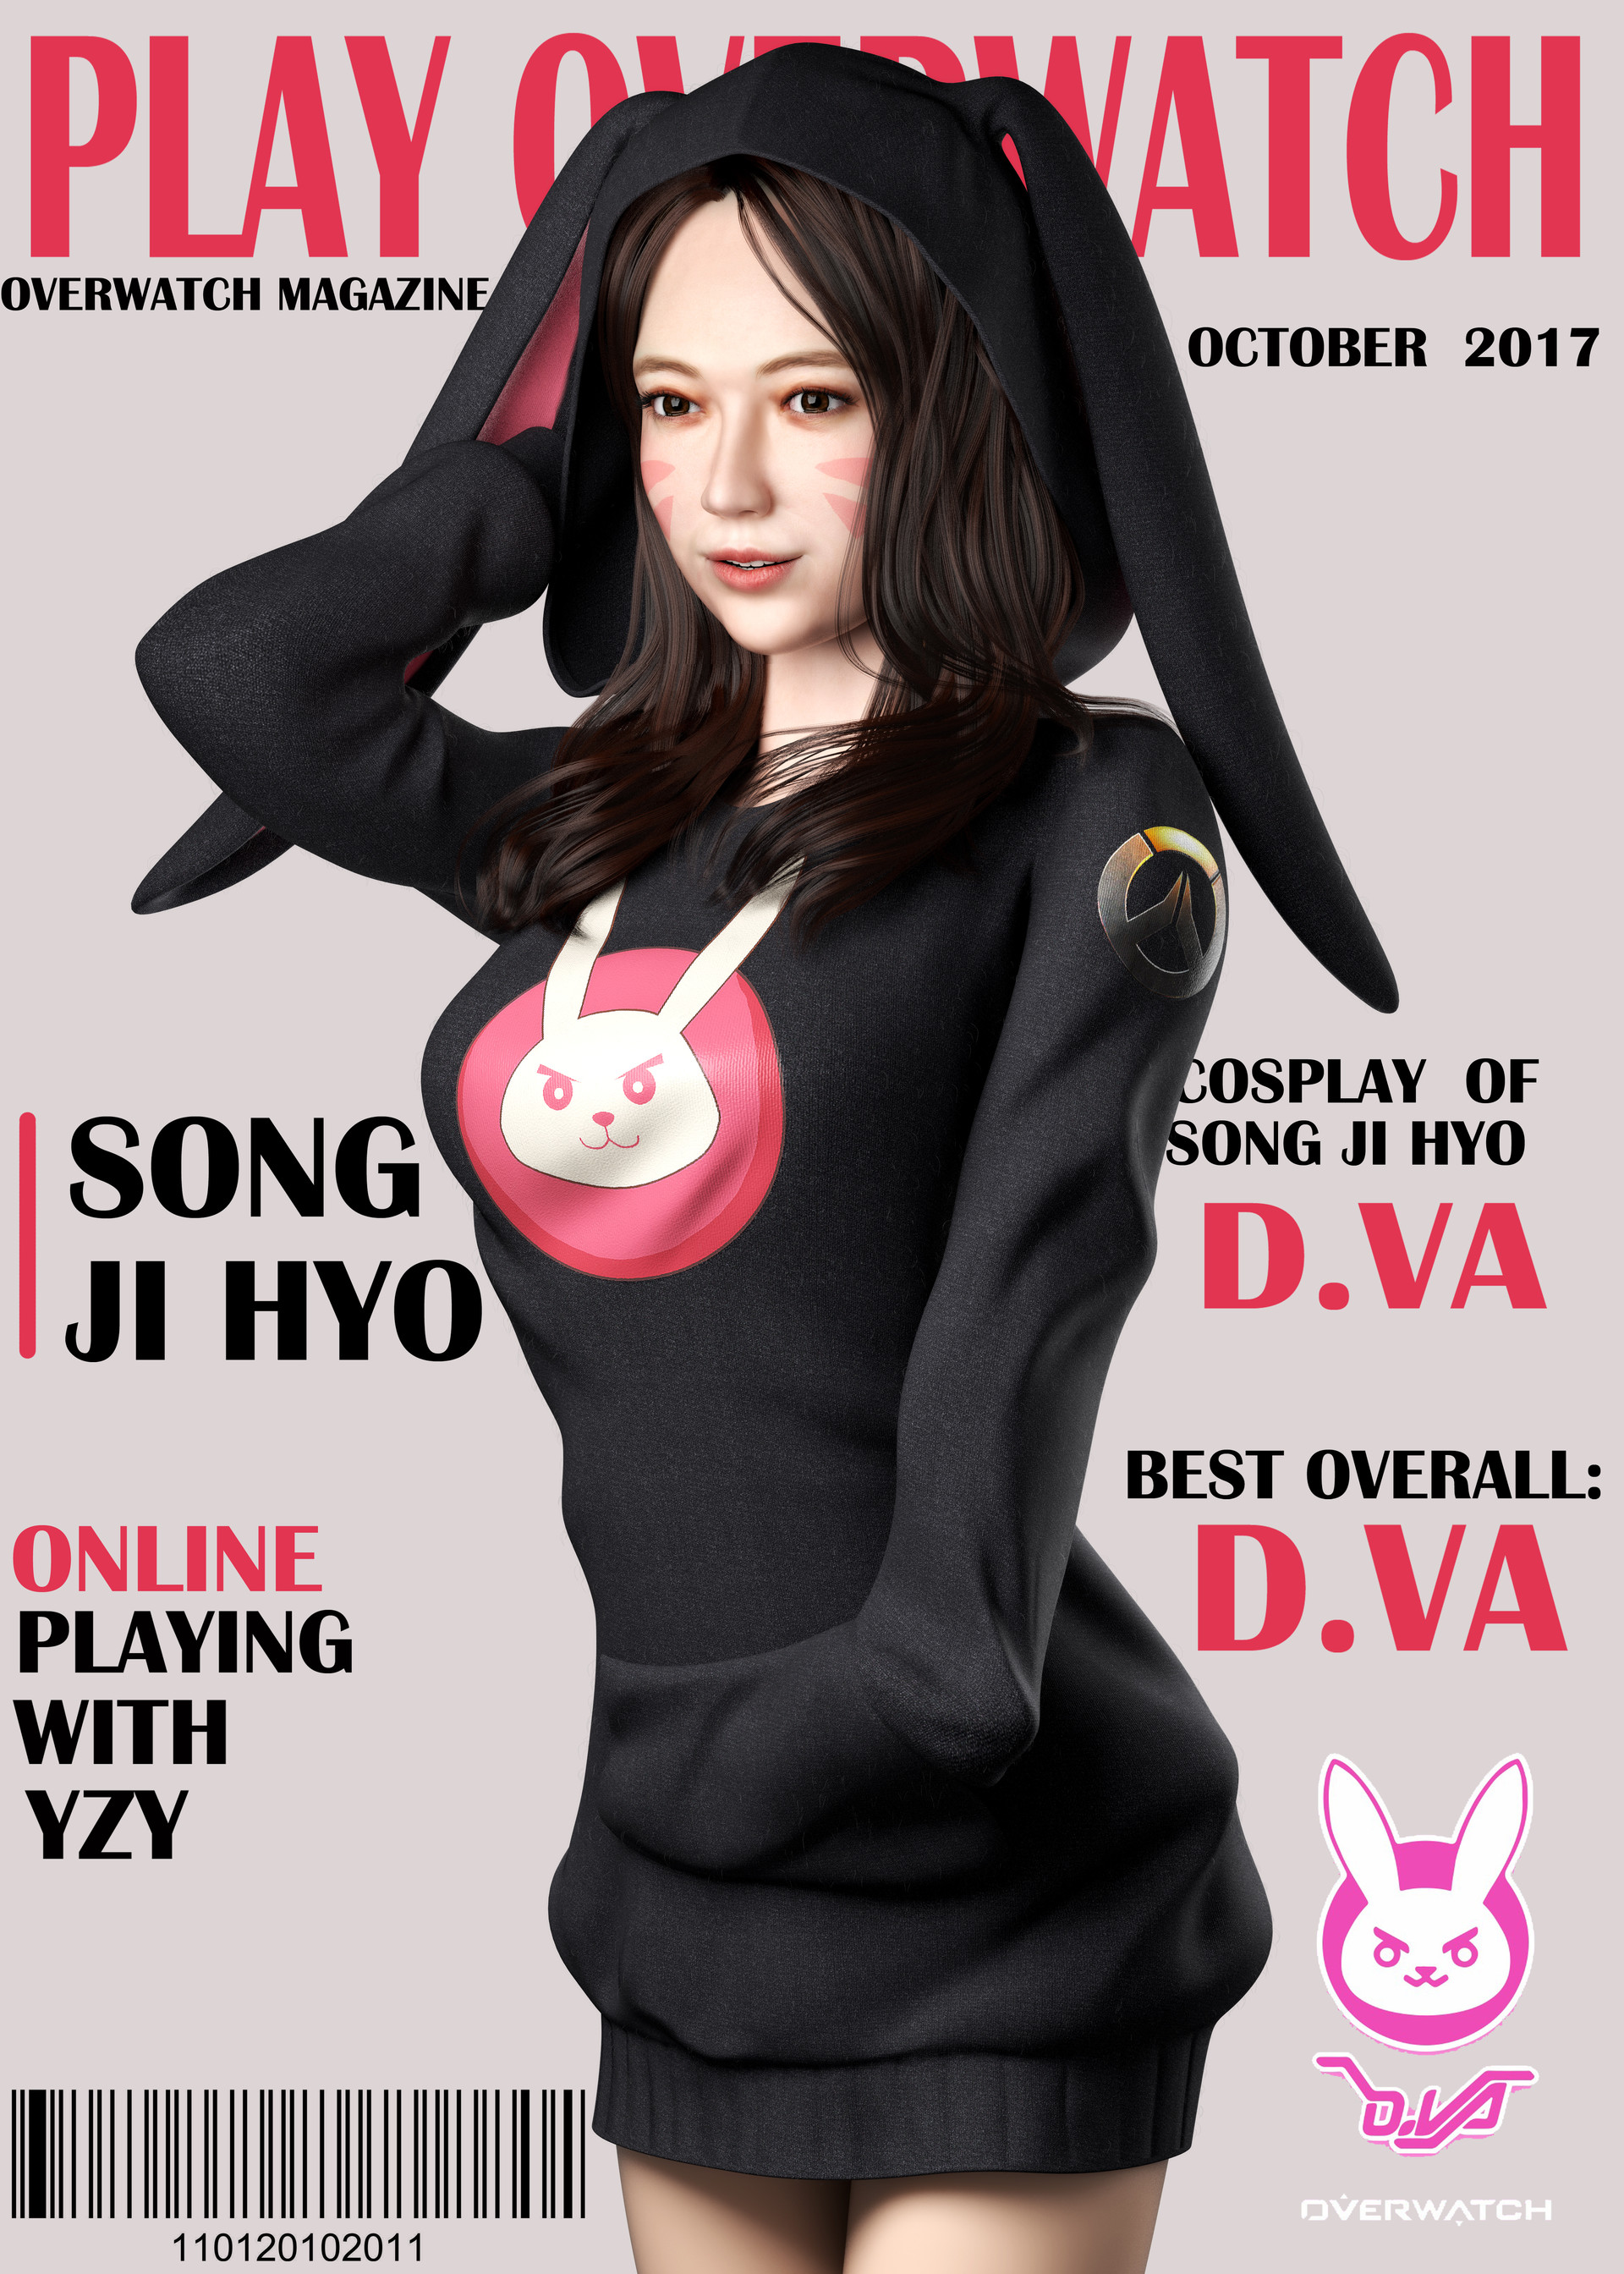 Yuan Zhenya Dva - Song Ji Hyo 2017 , HD Wallpaper & Backgrounds